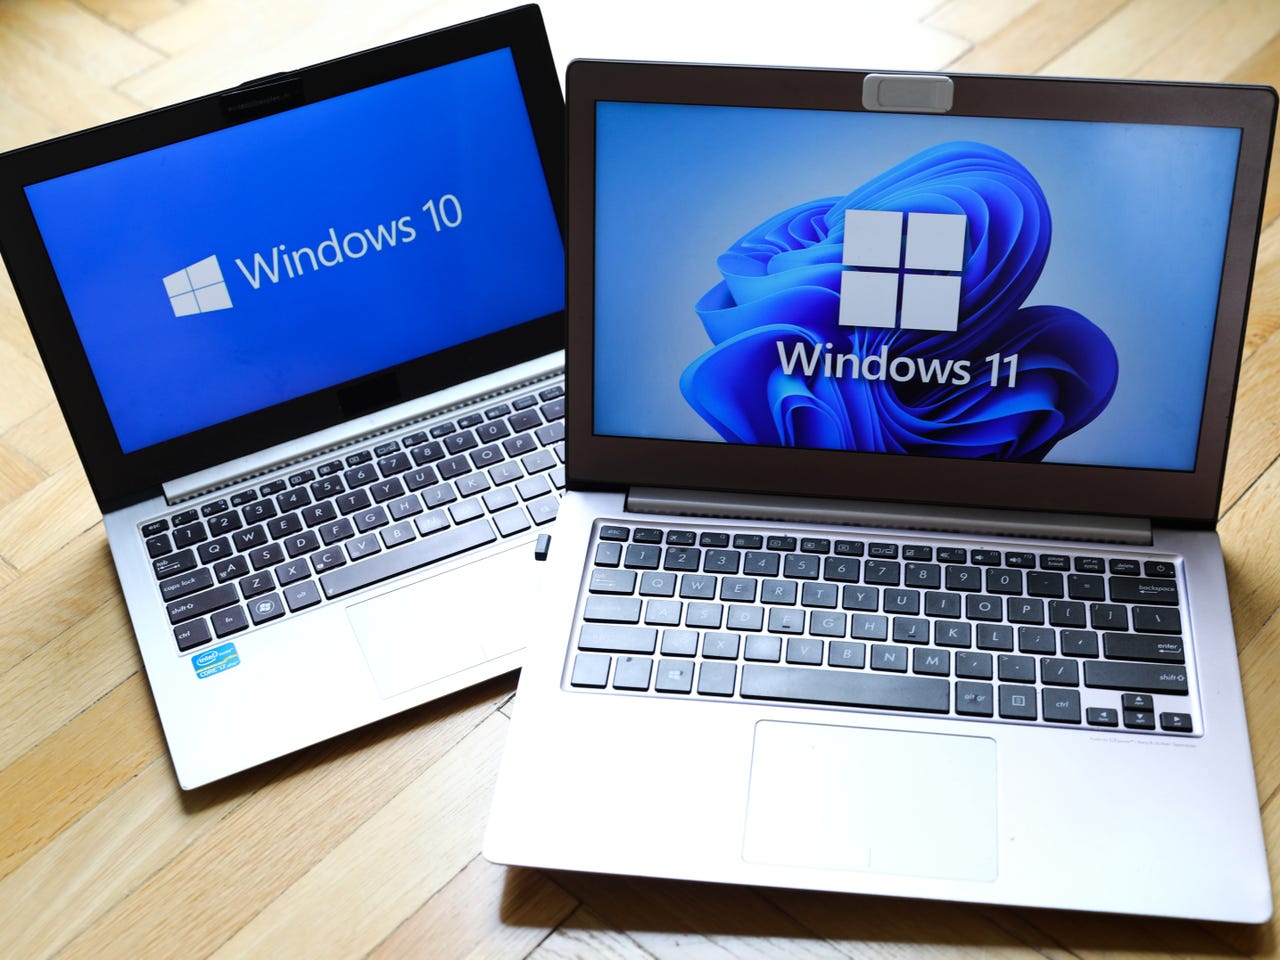 מחשב נייד של Windows 11 על גבי פינת המחשב הנייד של Windows 10